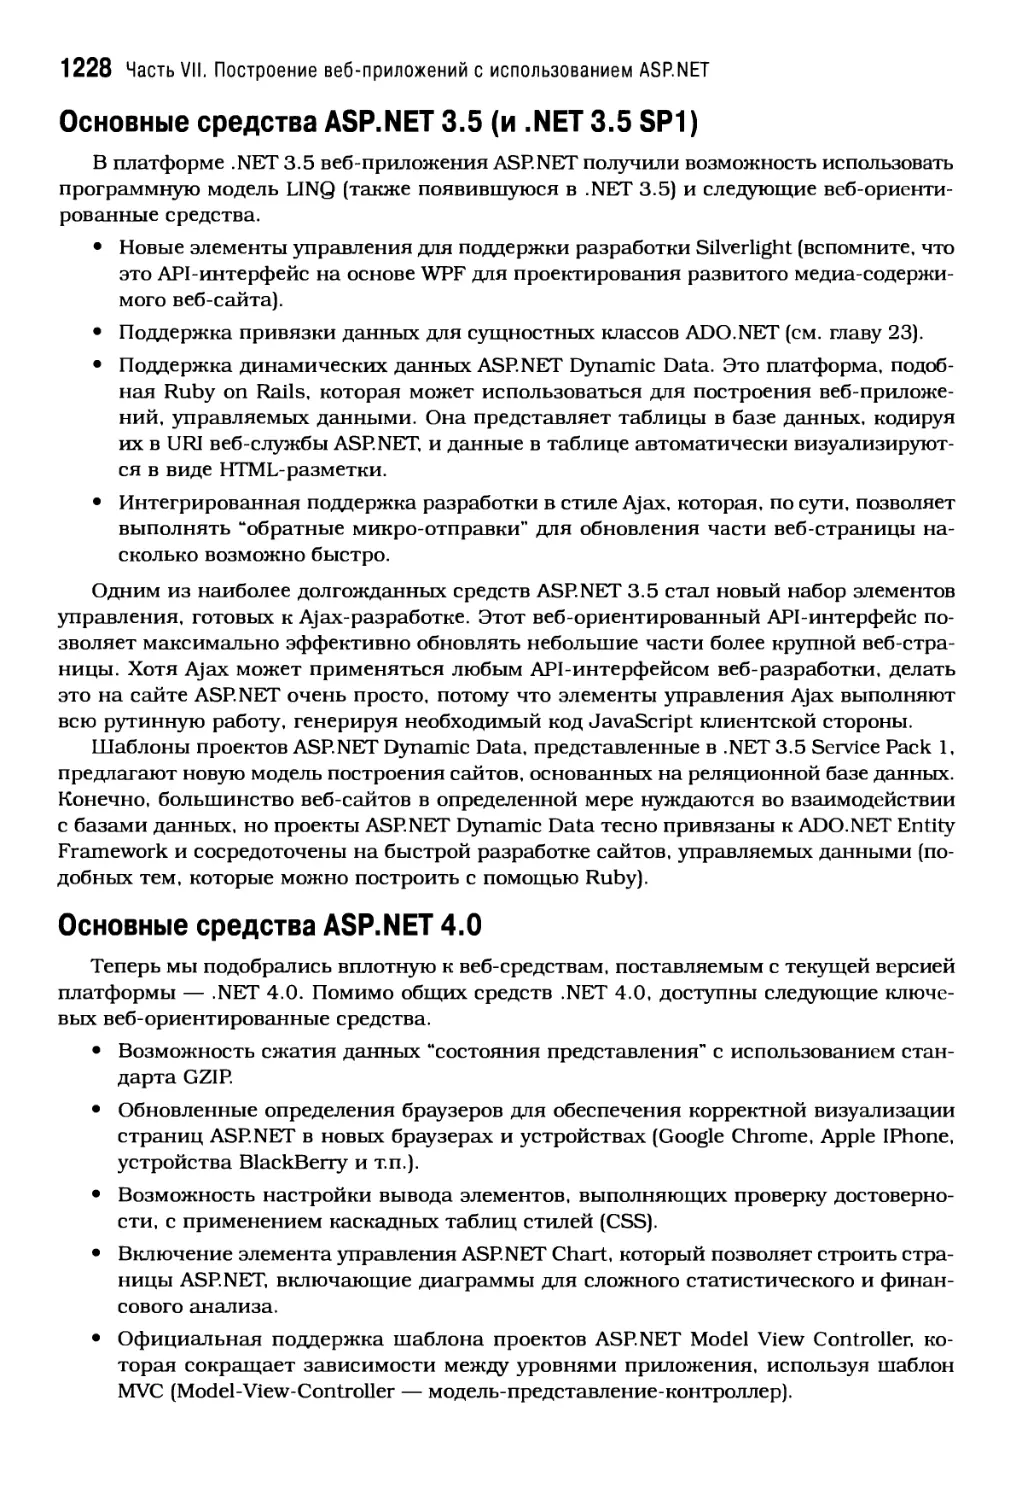 Основные средства ASP.NET 4.0